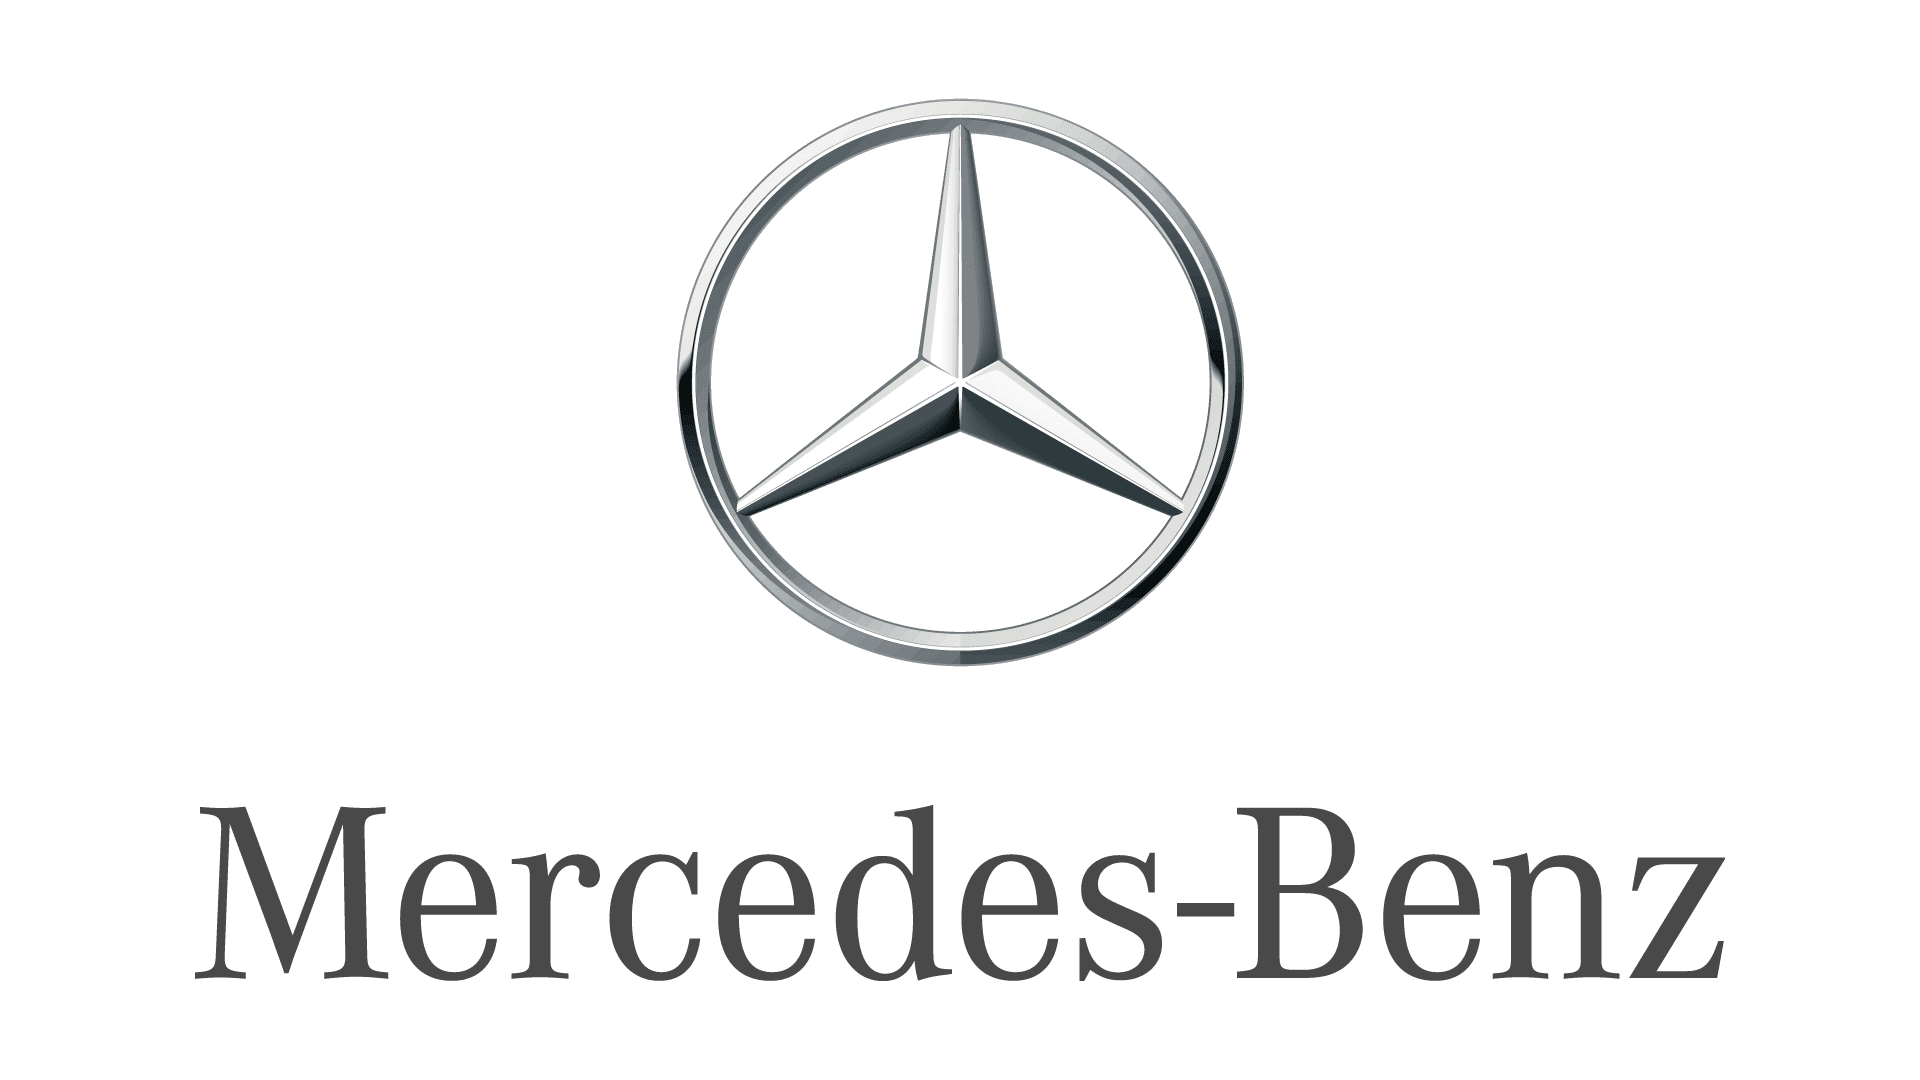 Комфорт Mercedes-Benz GLA Основные функциональные пакеты оборудования комфорта #3